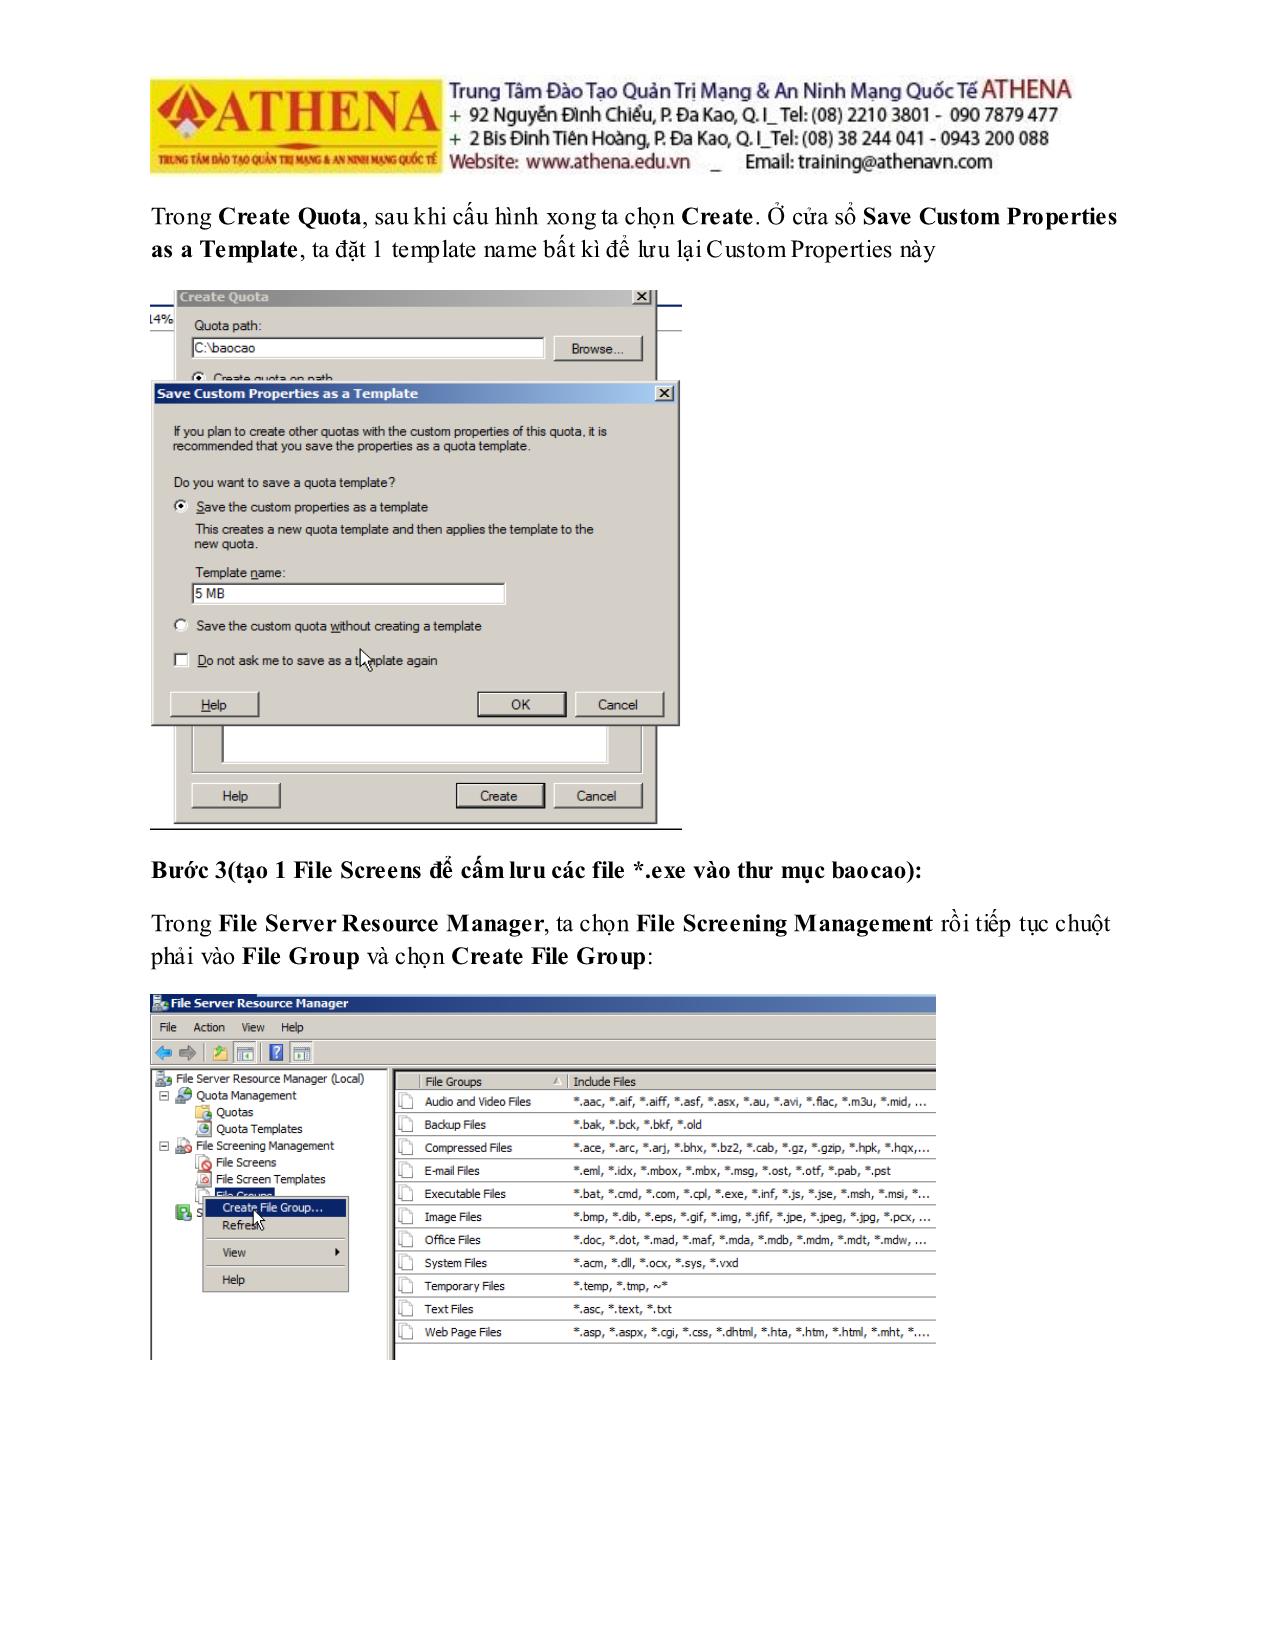 Tài liệu Hướng dẫn thực hành quản trị mạng - File server resource manager trang 9